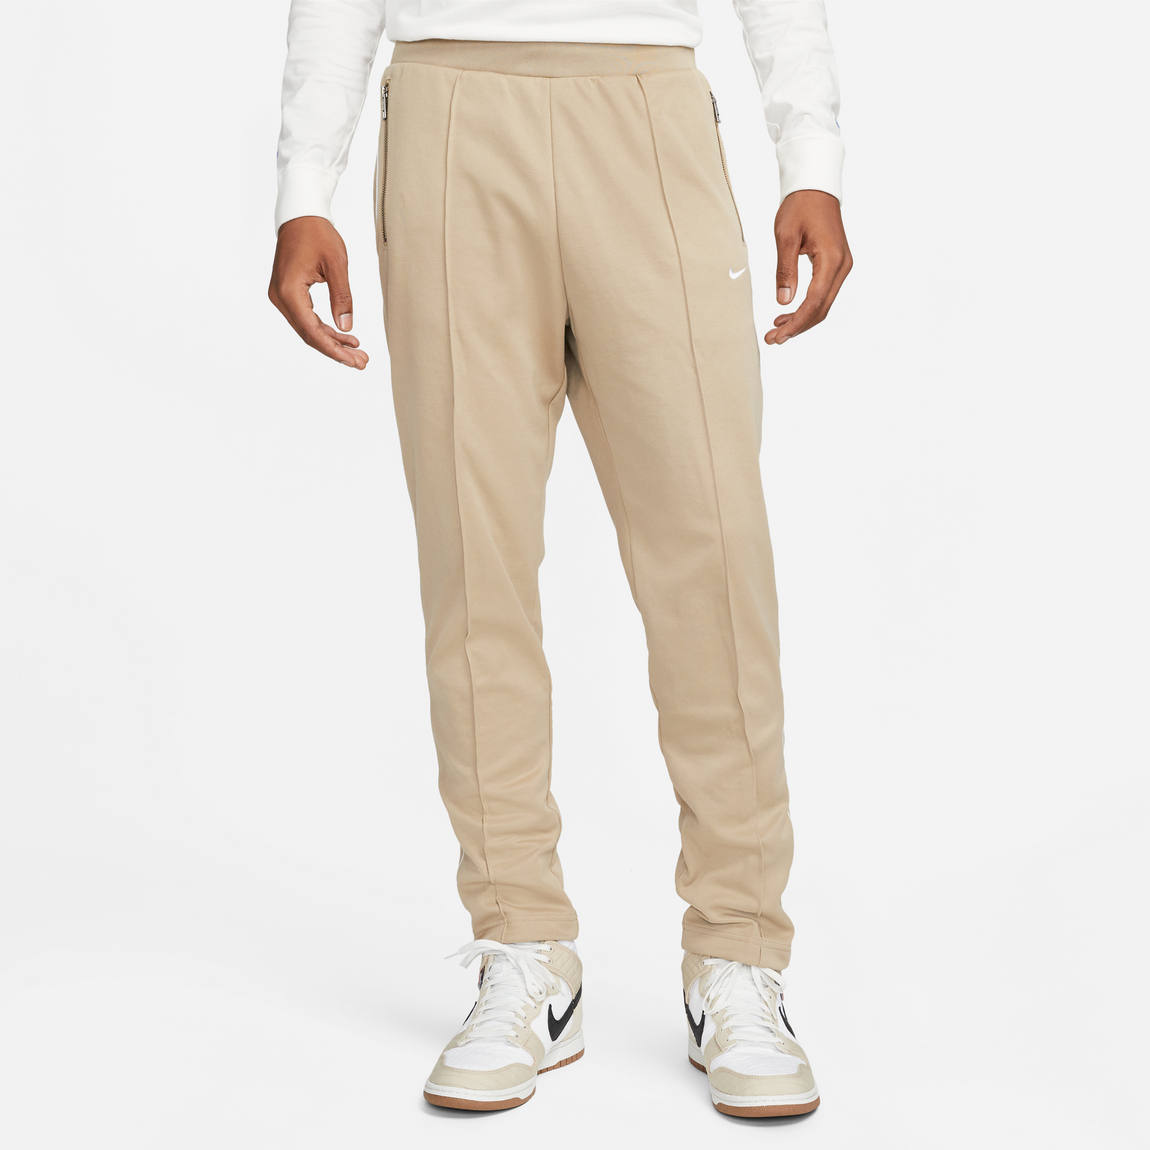 Nike Sportswear Pants (Khaki/White) - Nike Sportswear Pants (Khaki/White) - 